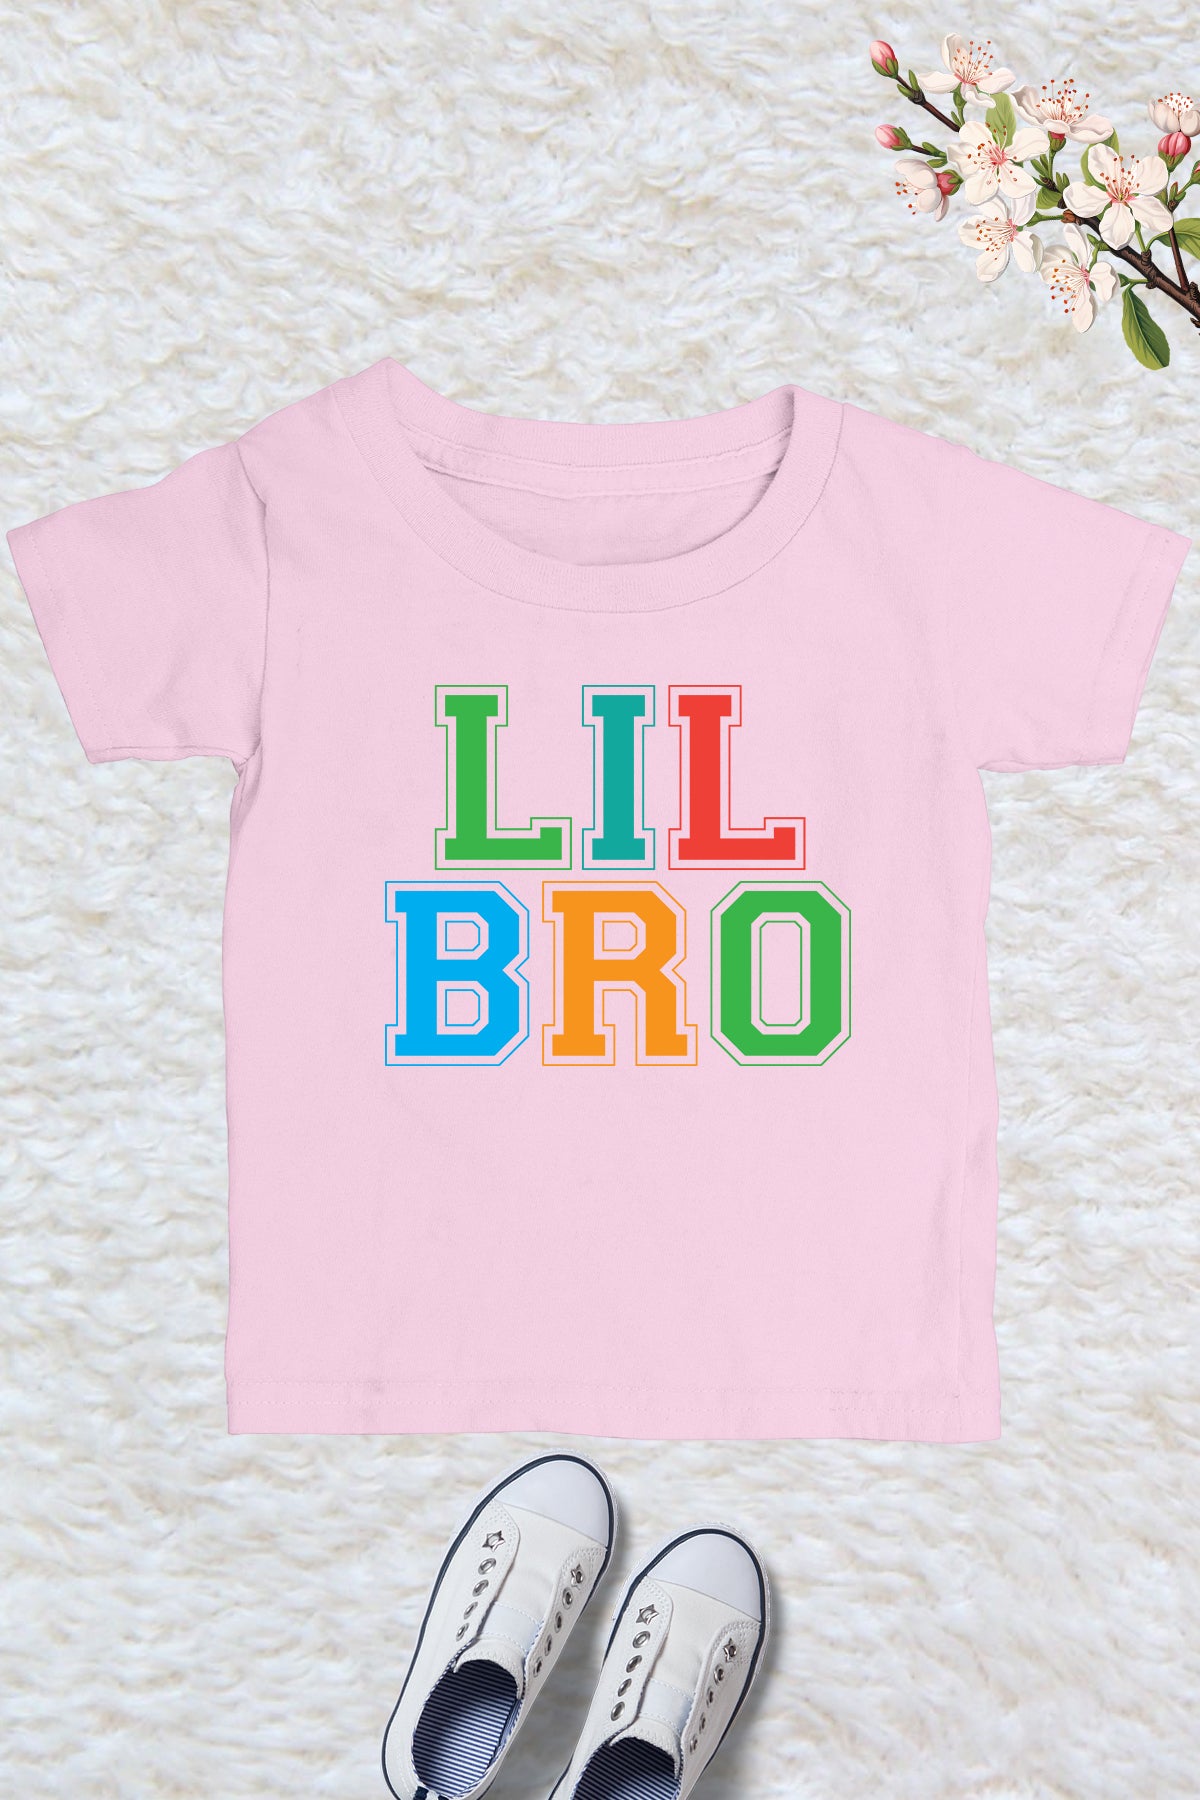 Lil bro Kids T Shirt